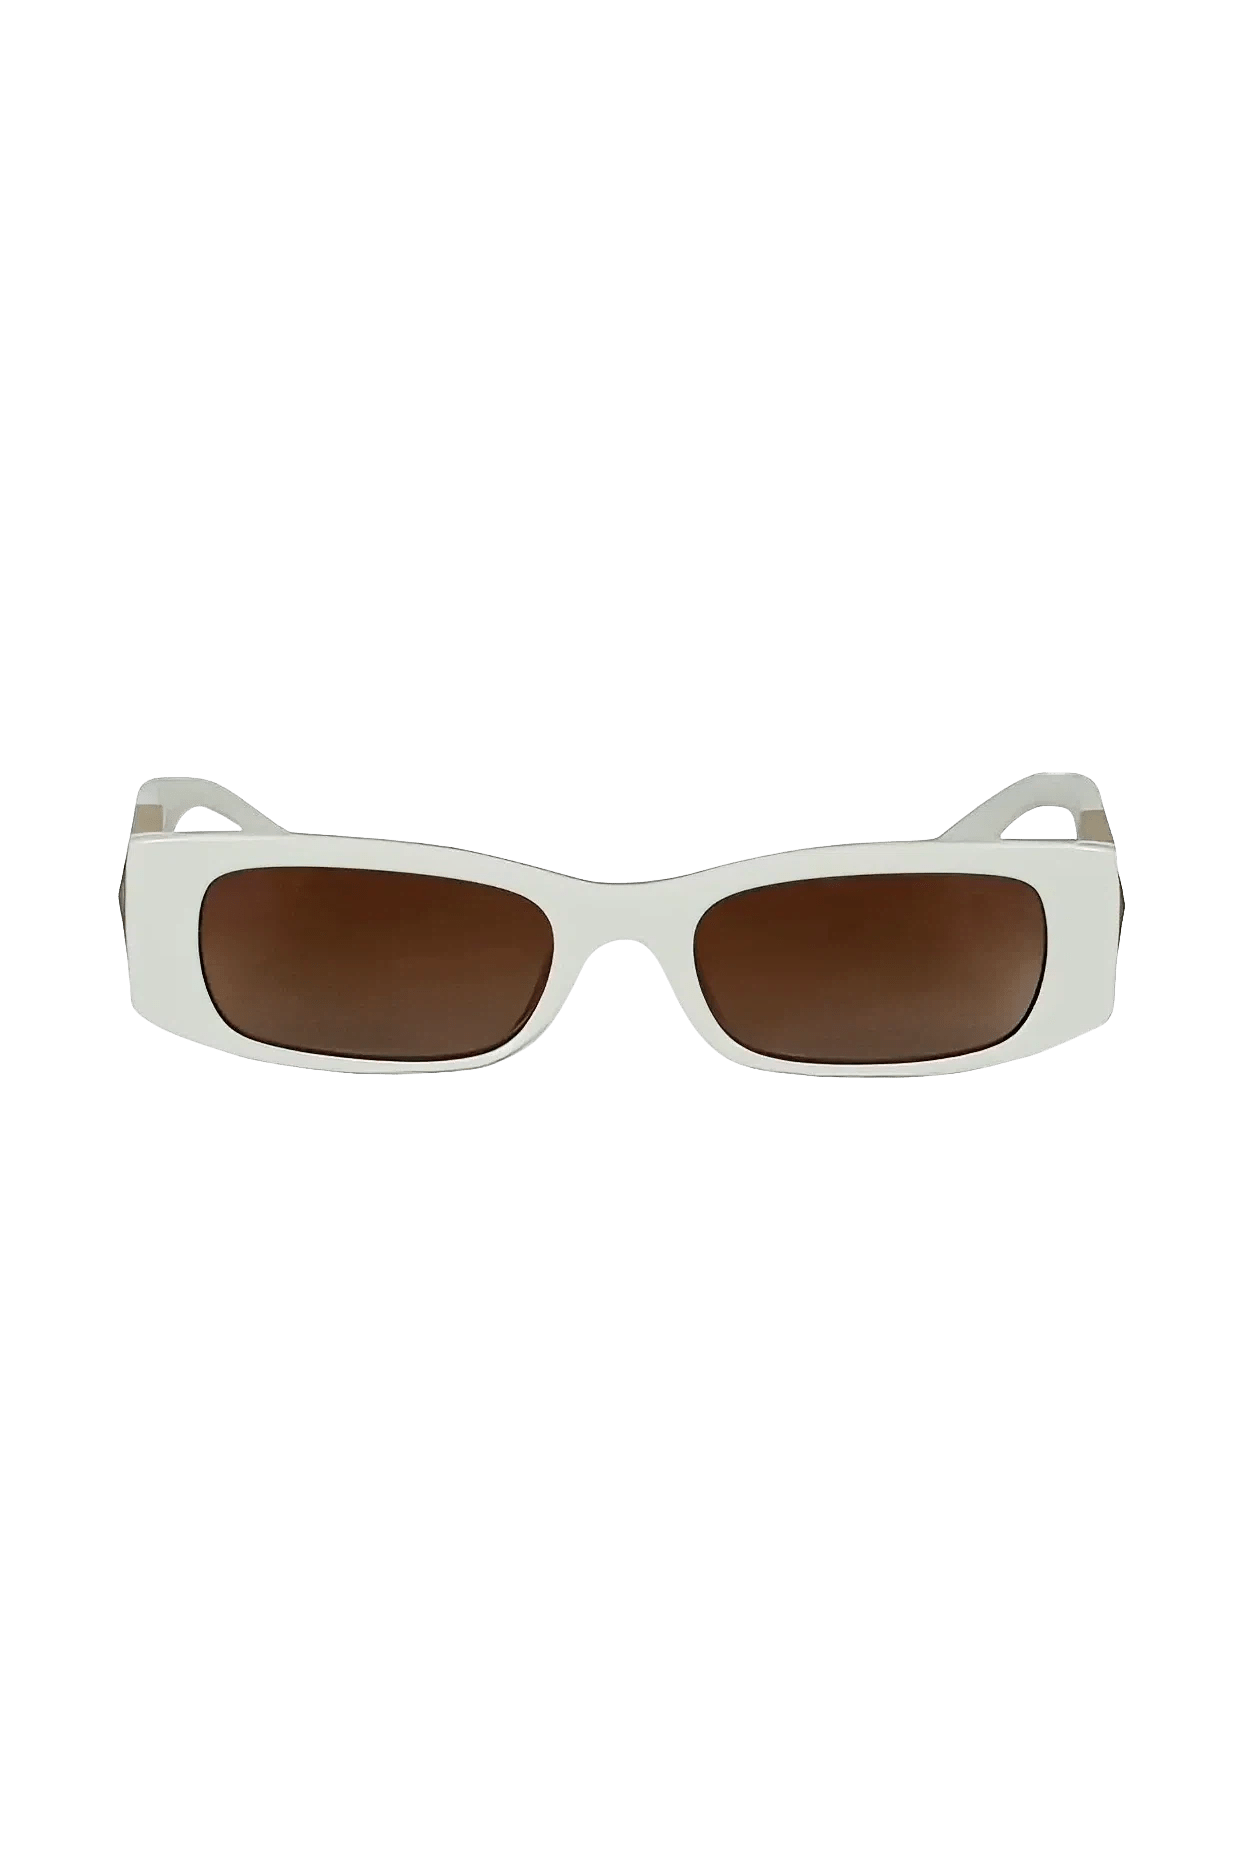 Valentino White Roman Stud Sunglasses